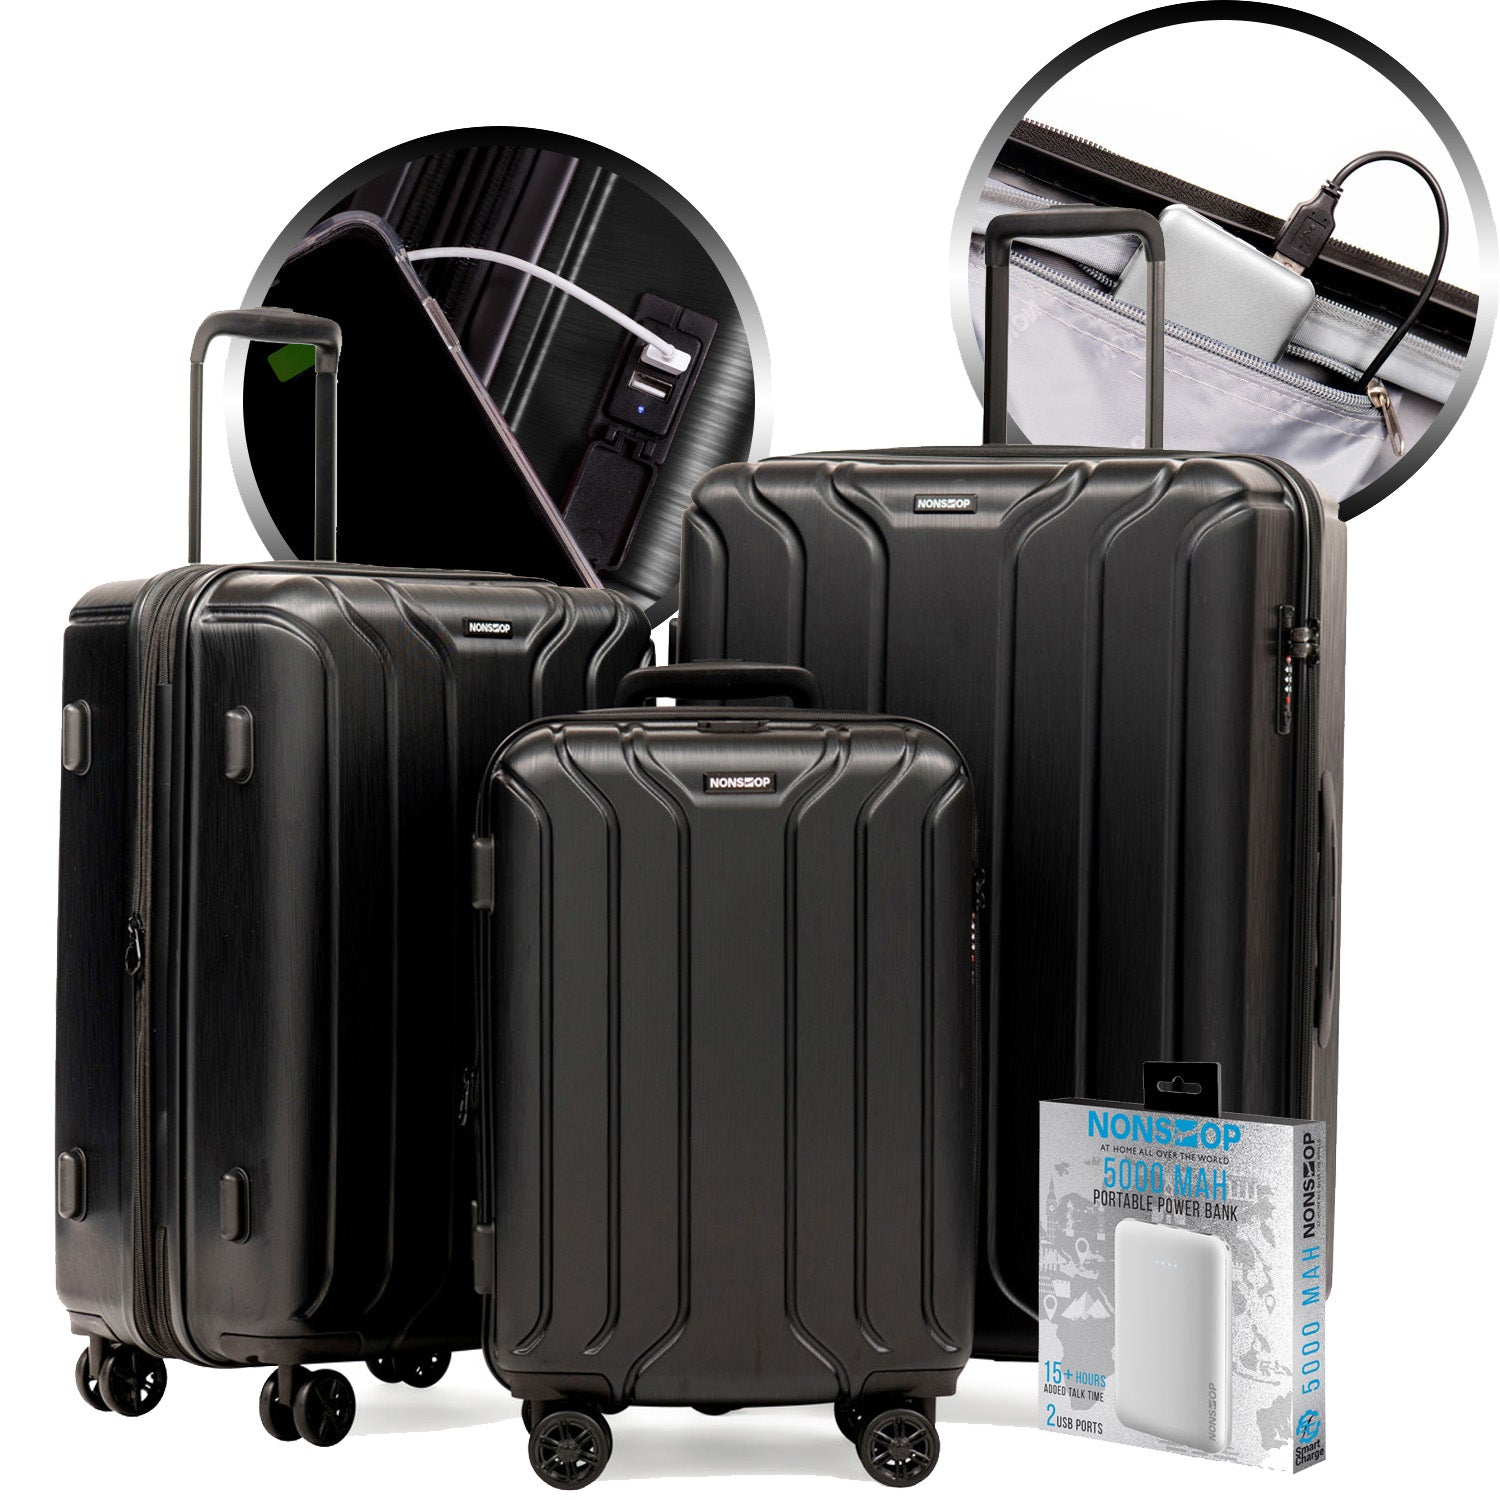 Hardcase Roller Luggage Set (28', 24' and 20')